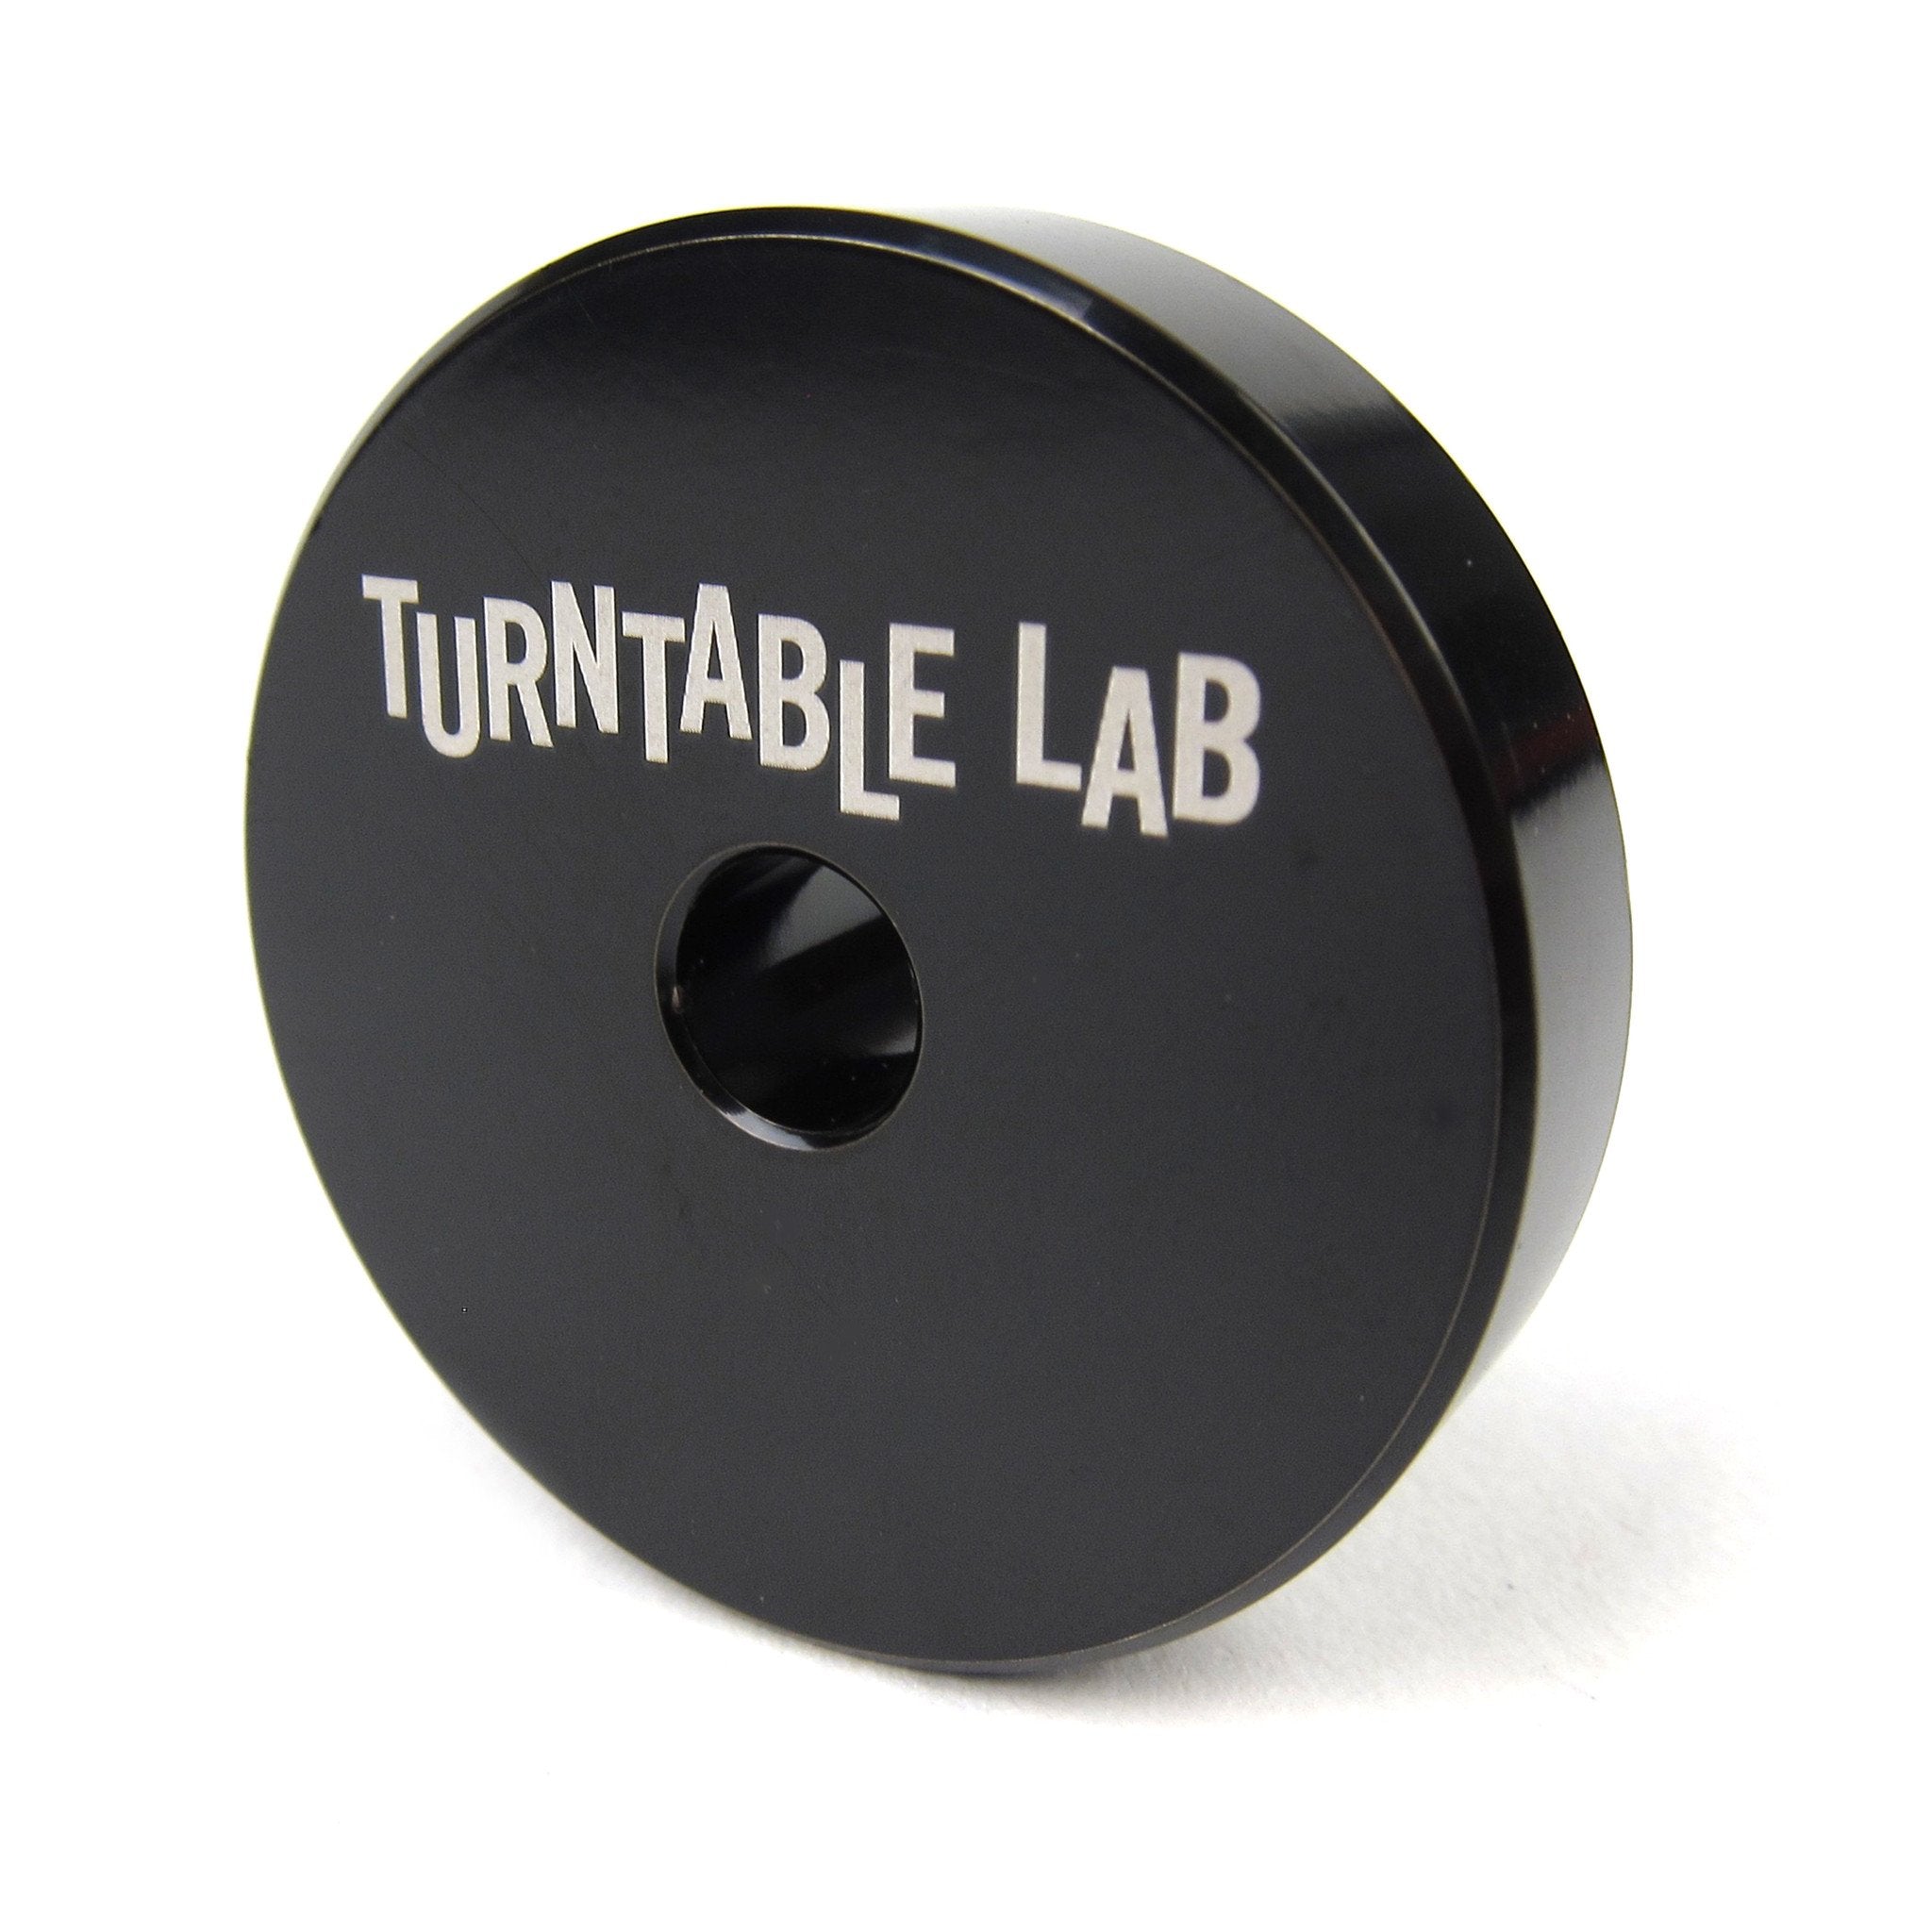 Turntable Lab: Stainless Steel 45 Adaptor - Black